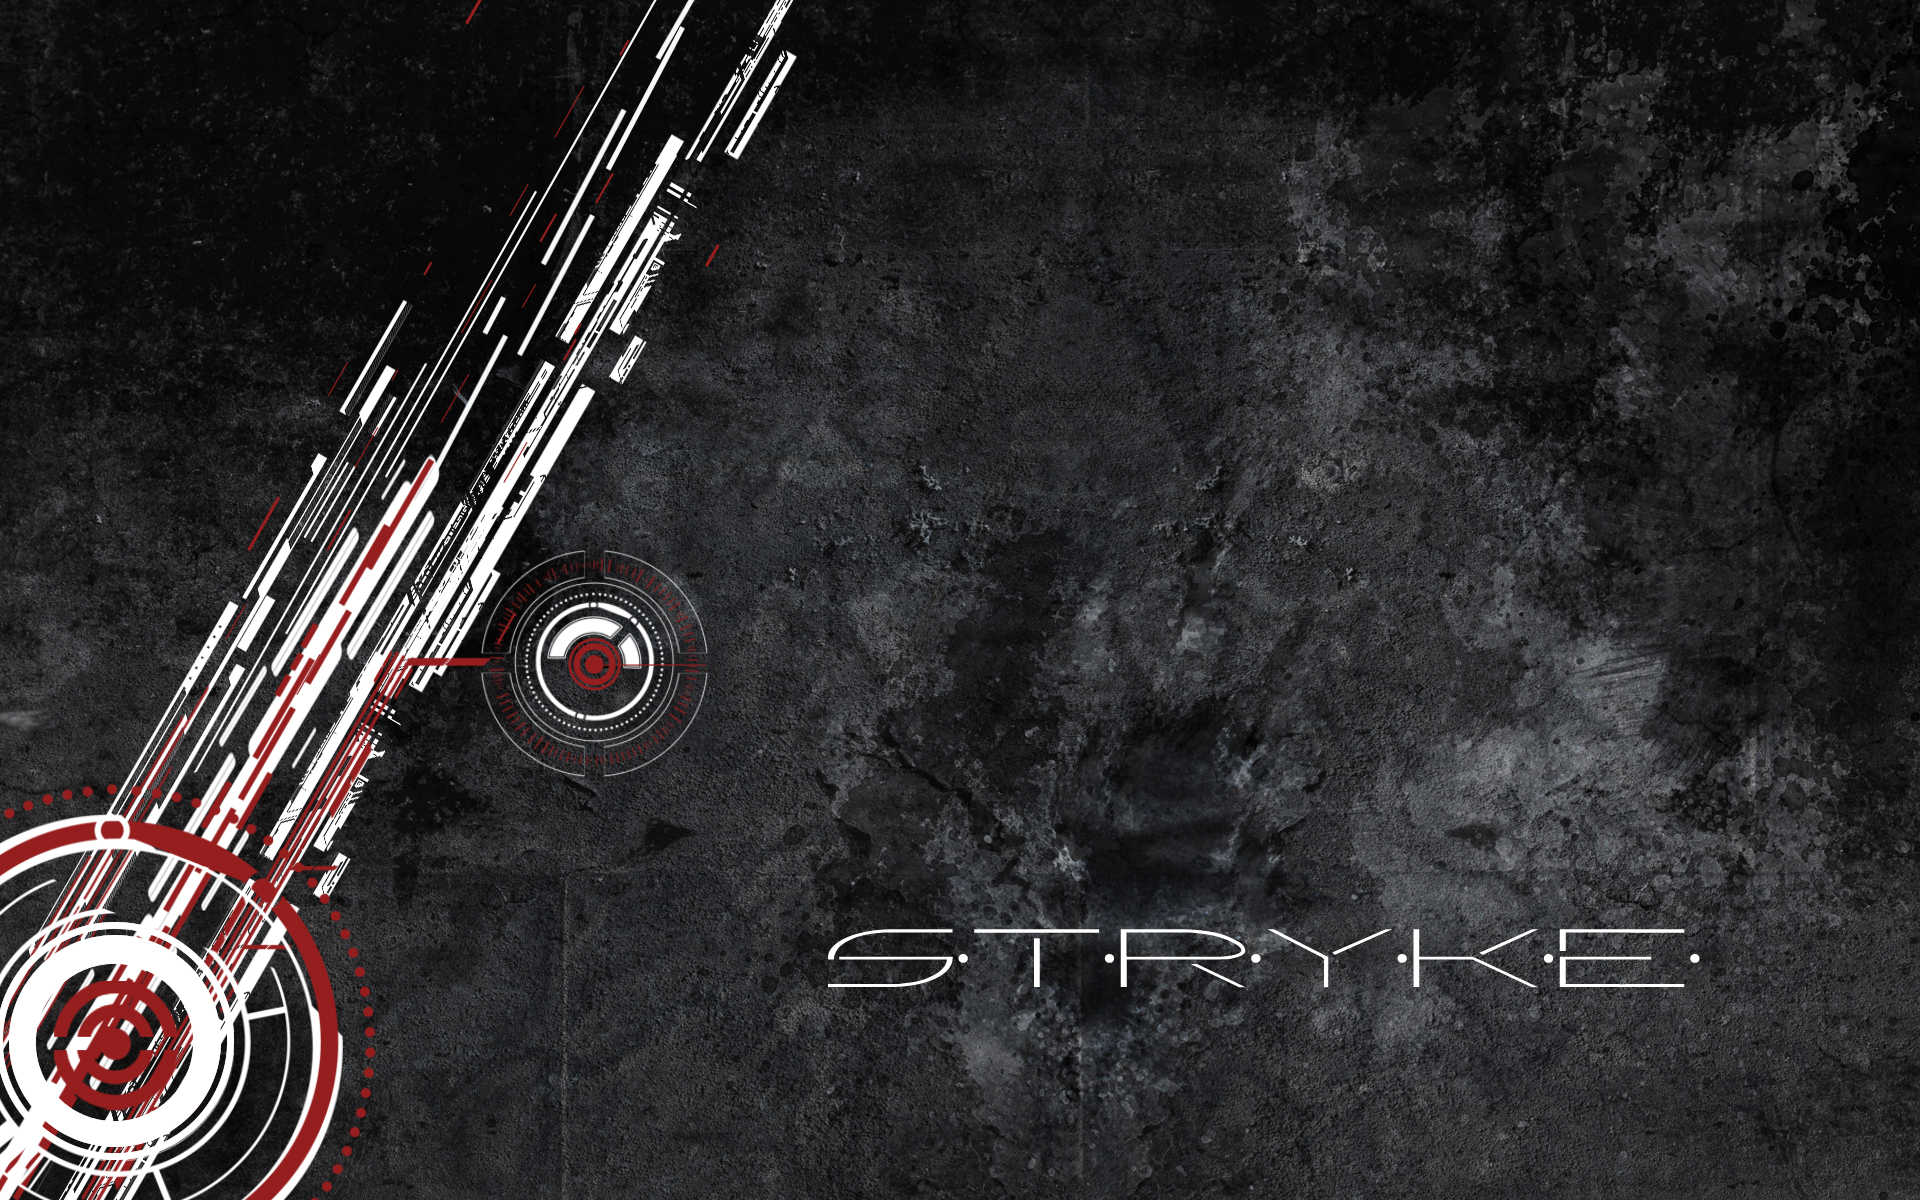 Abstract Stryke - HD desktop wallpaper by stryke